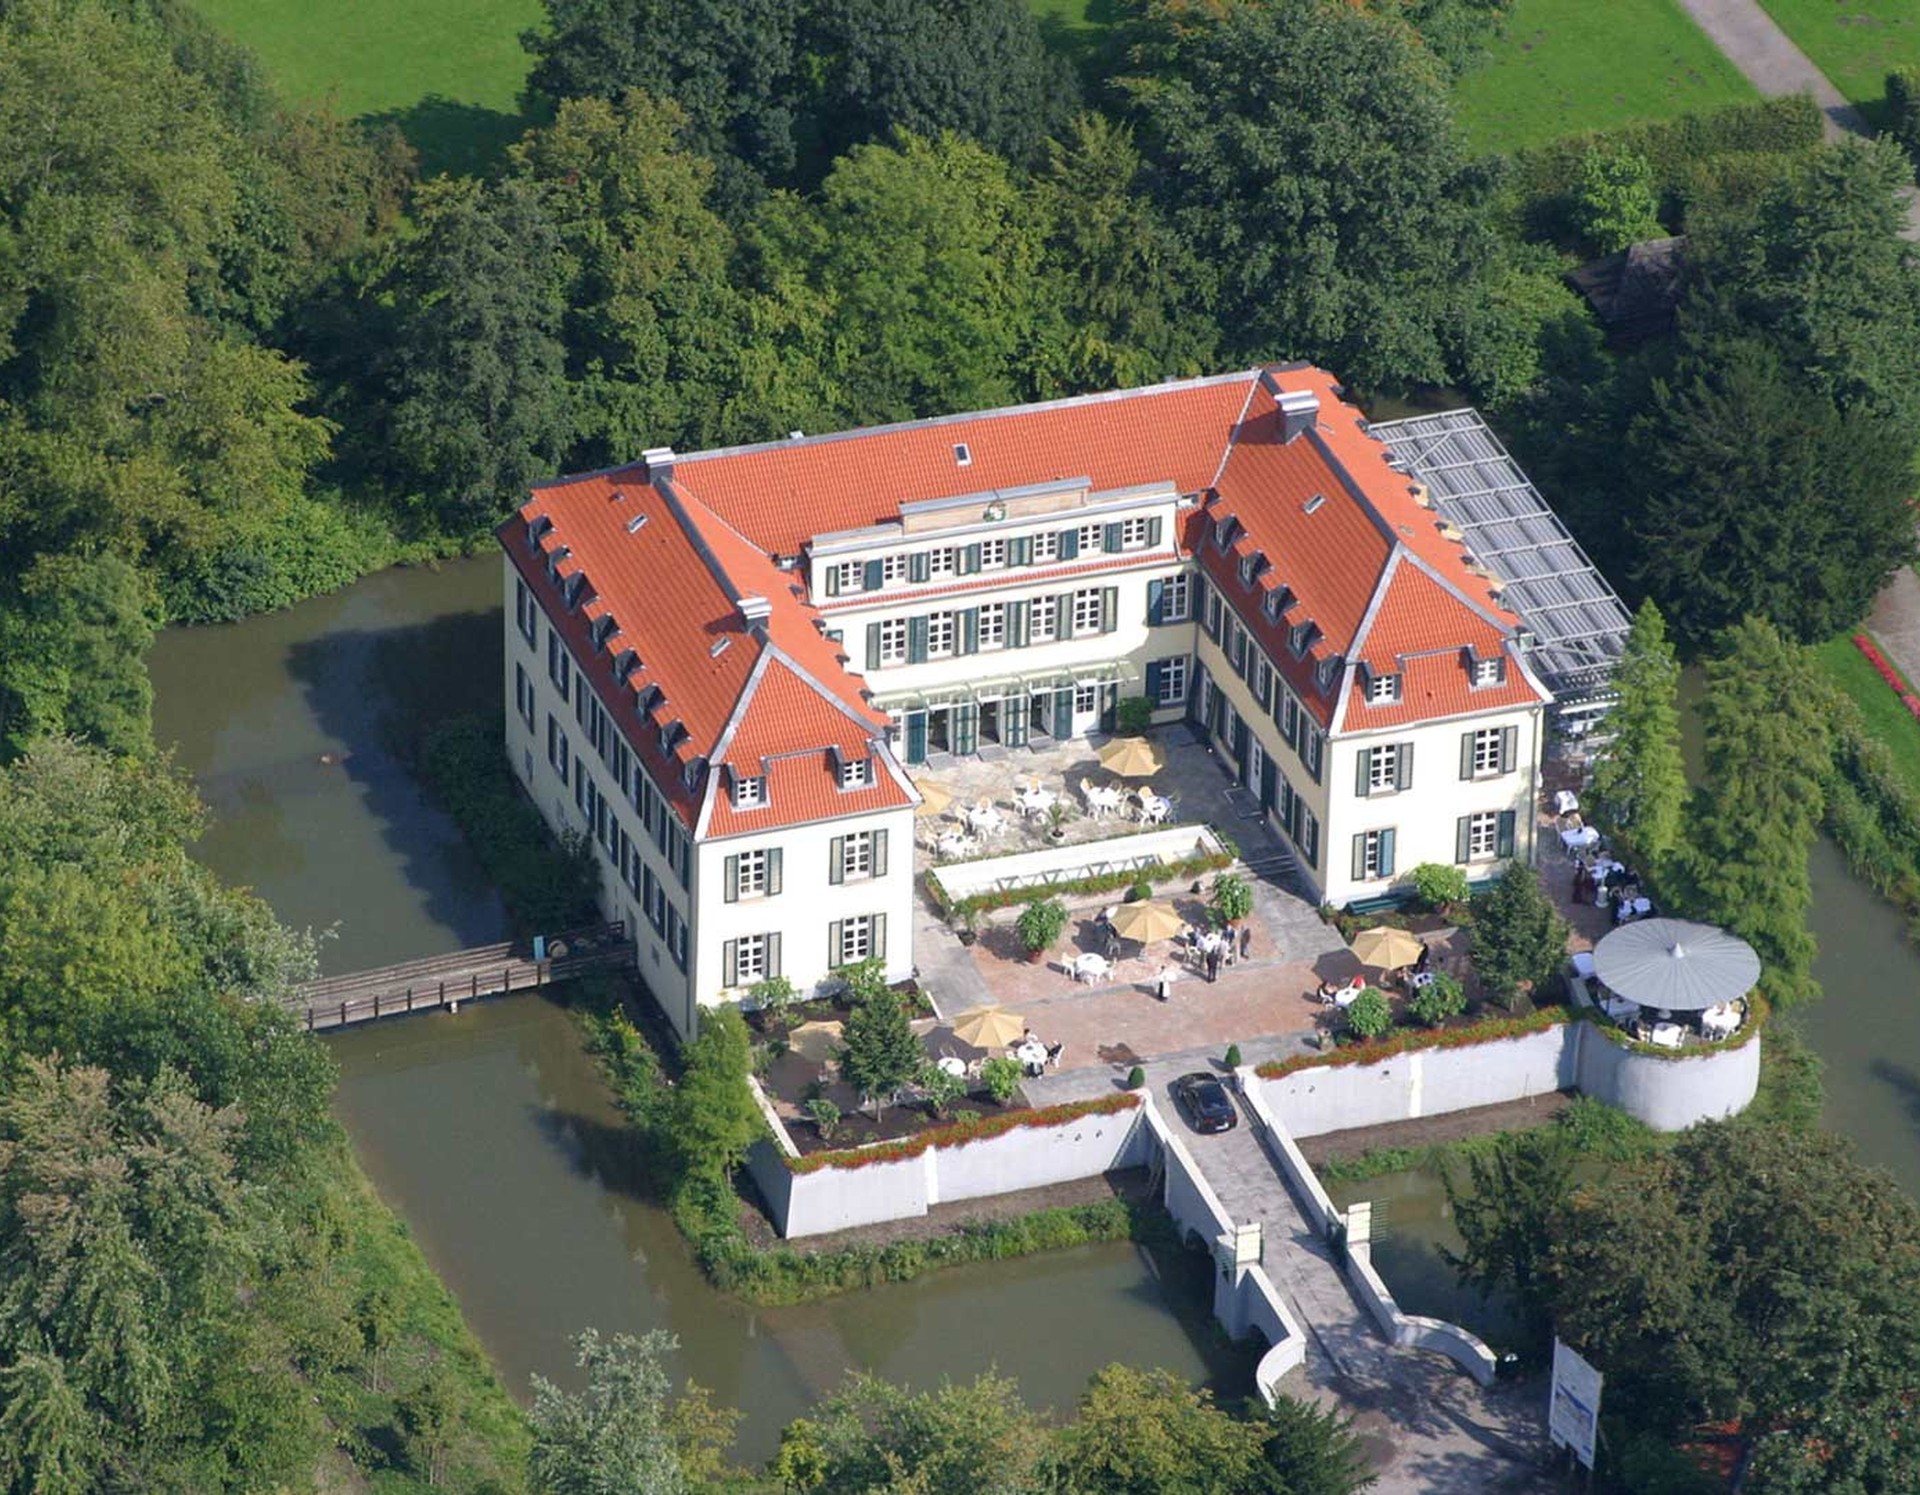 Luftansicht des Hauses Berge in Gelsenkirchen.